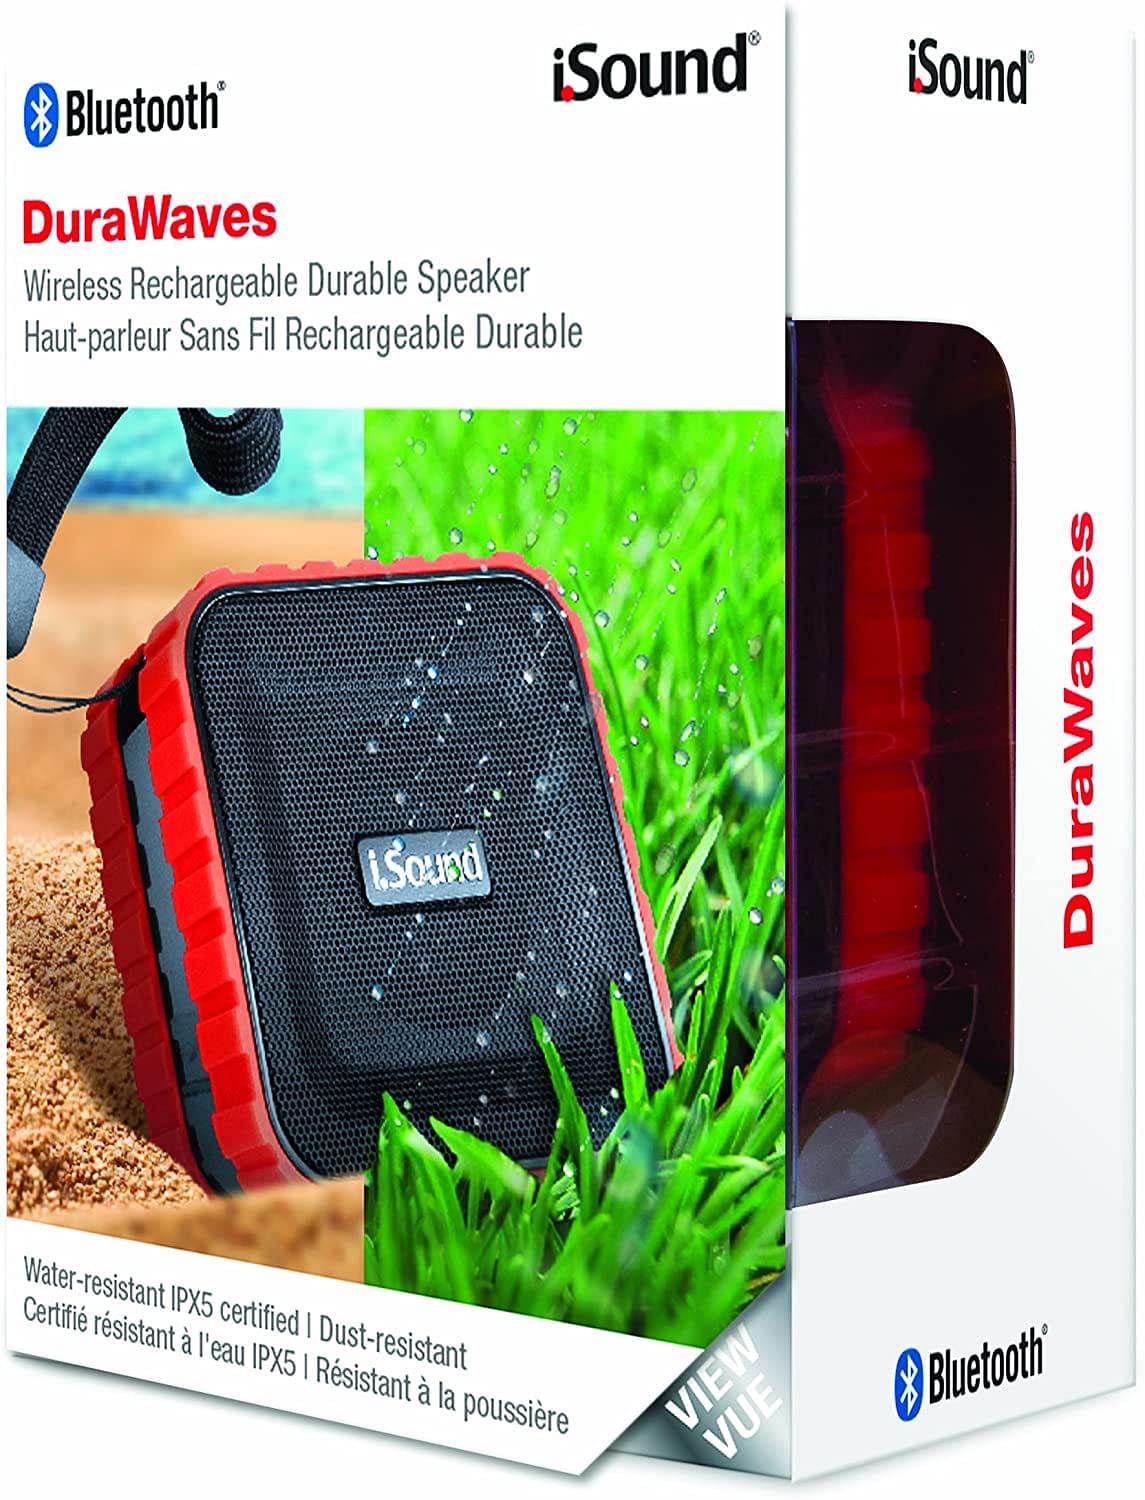 iSound DuraWaves Bluetooth Speaker, Red, ISOUND-5468